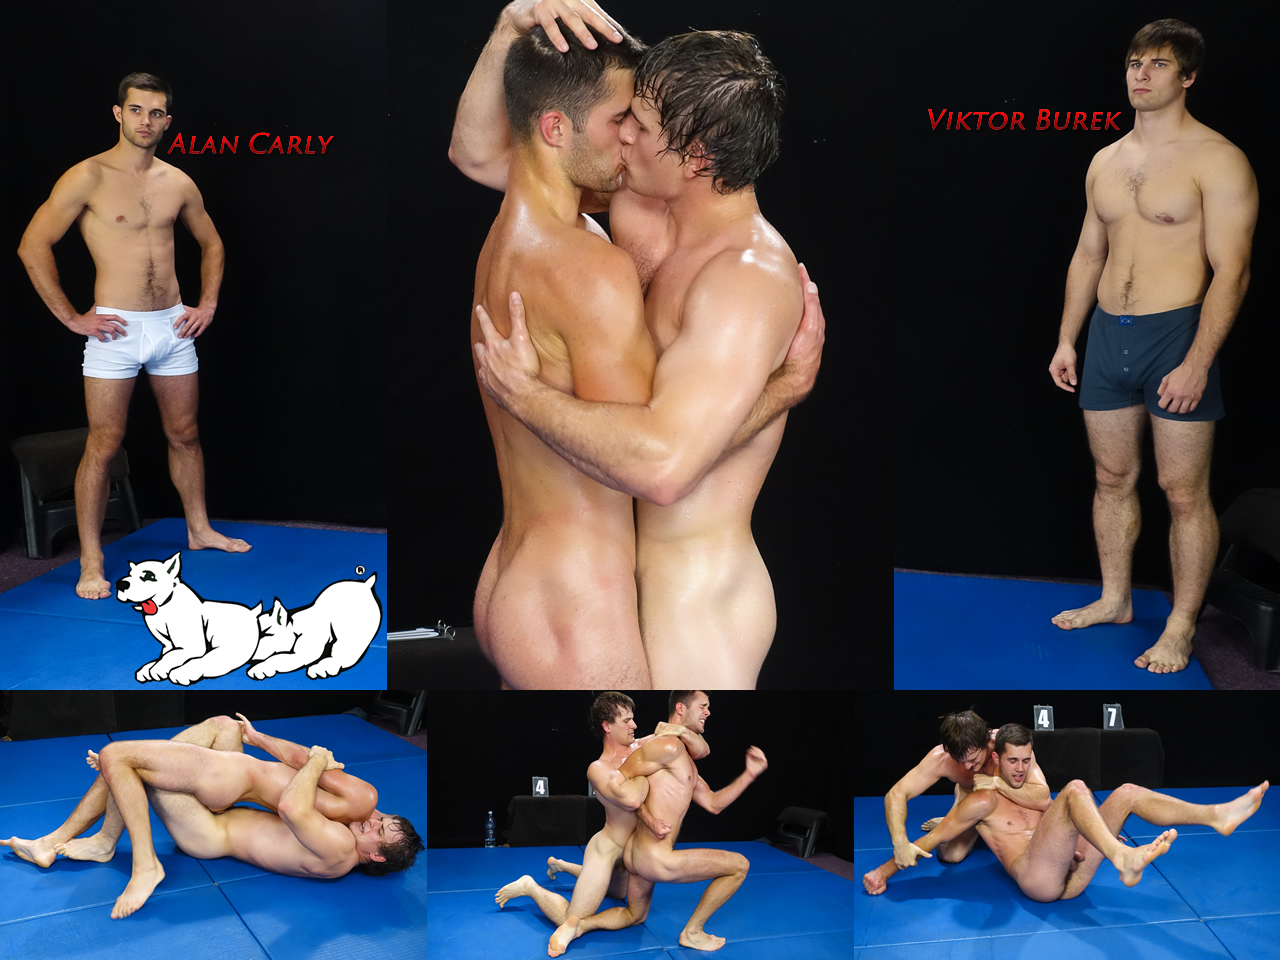 ManSurfer Alan Carly & Viktor Burek - Wrestle